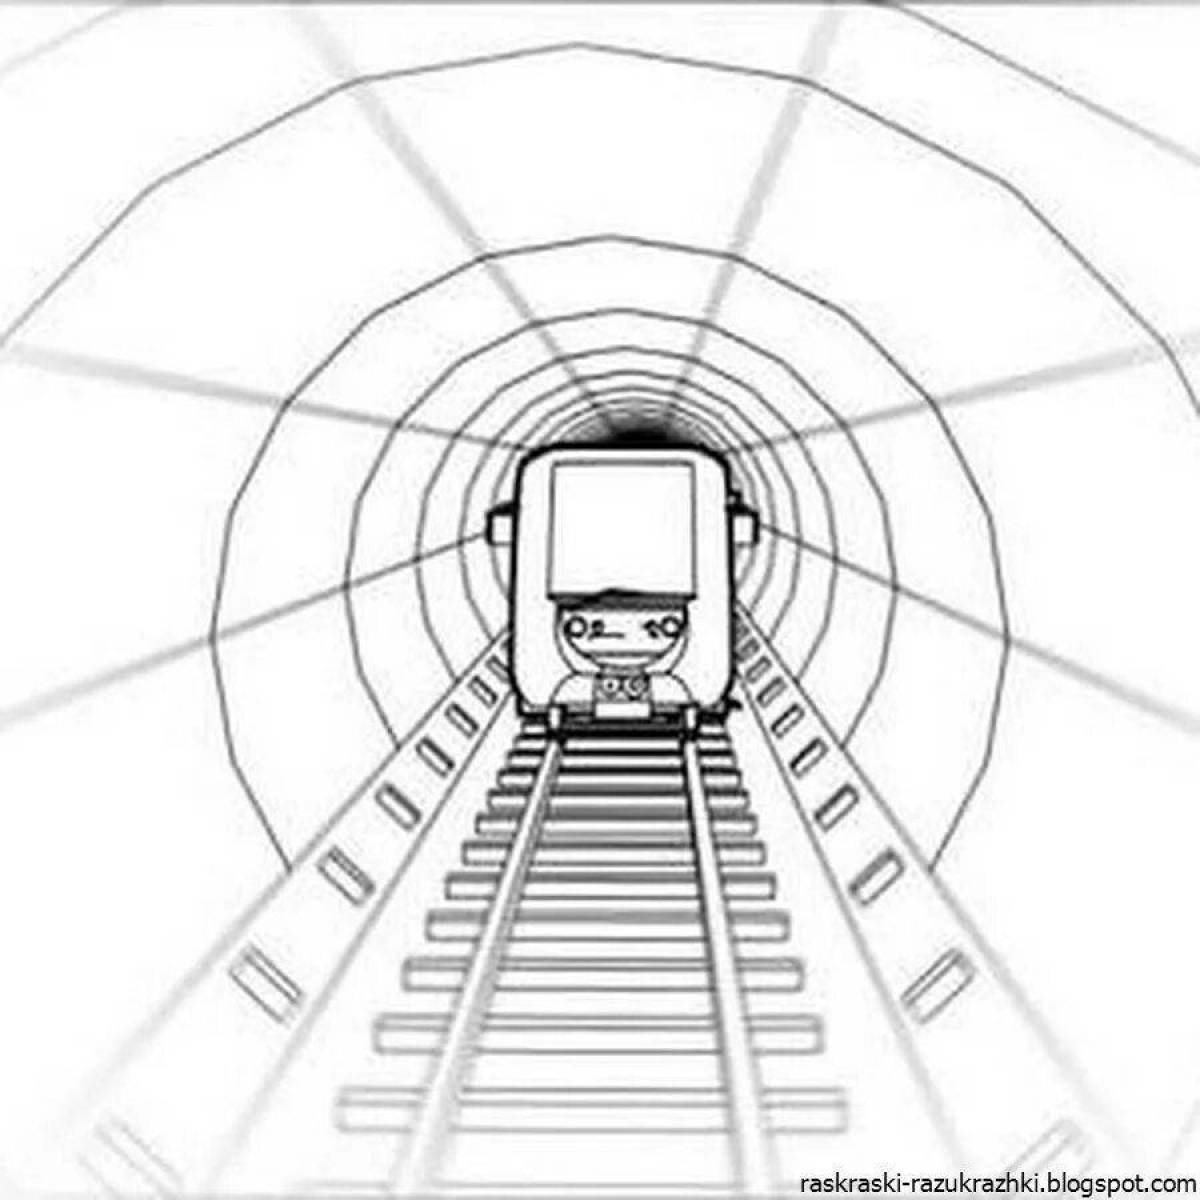 Привлекательная раскраска поезда метро